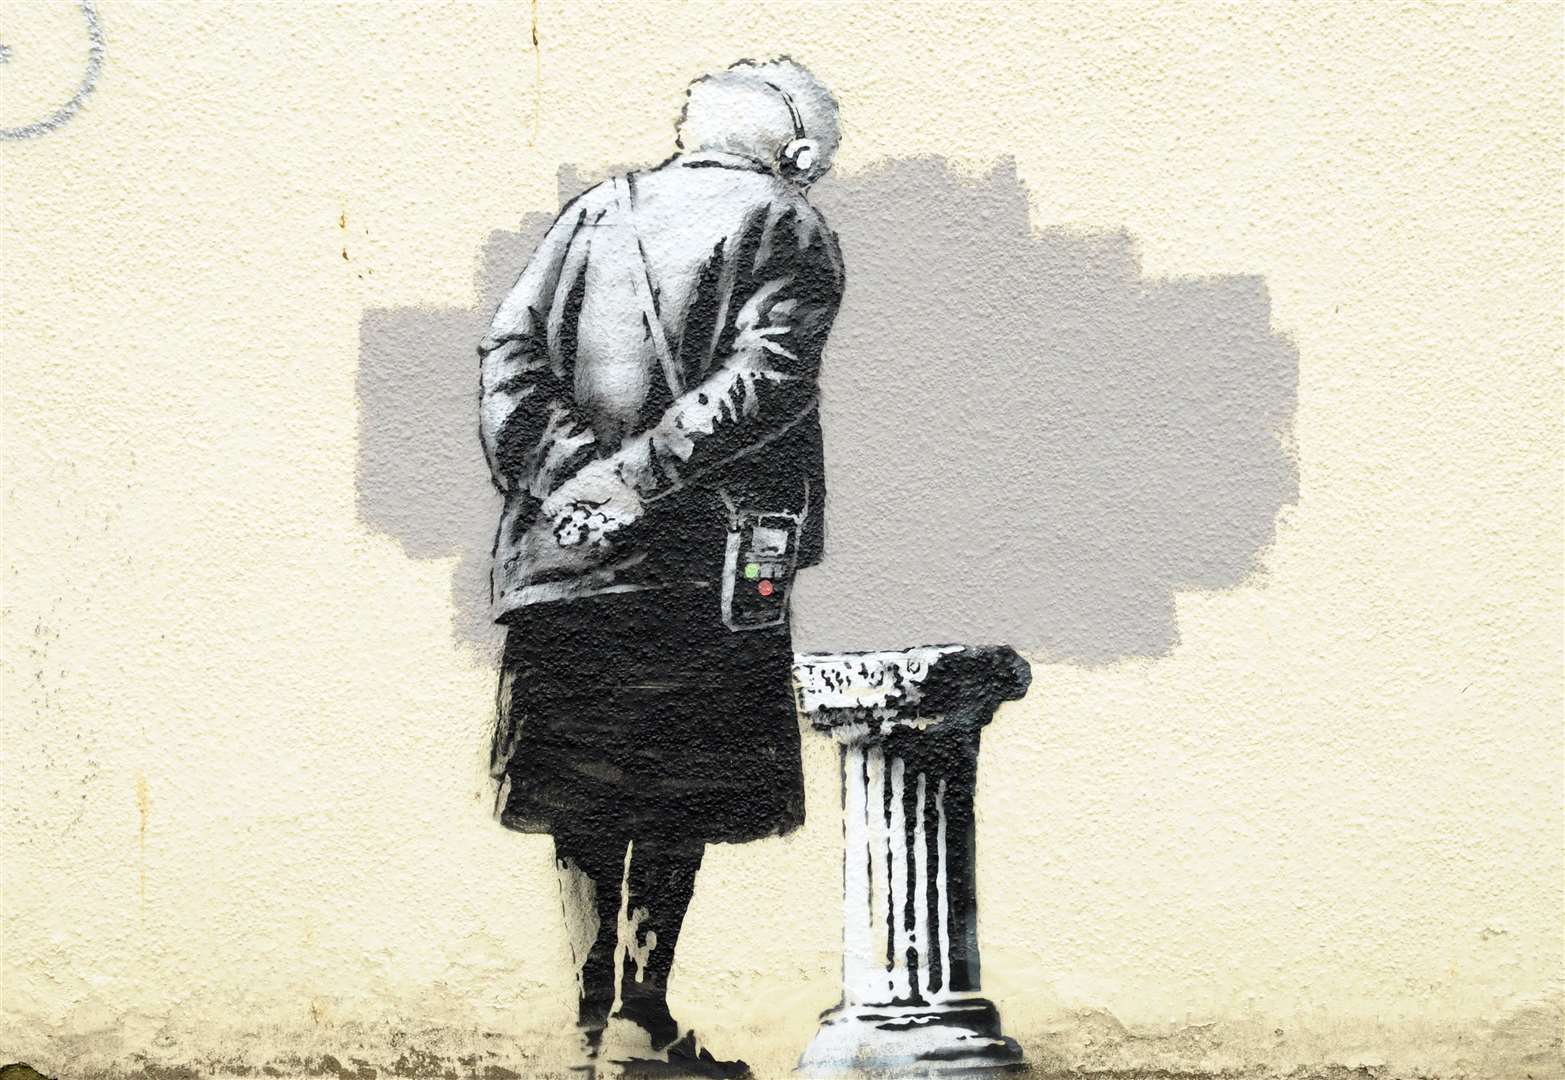 'Art buff' by Banksy appeared in Folkestone in 2014